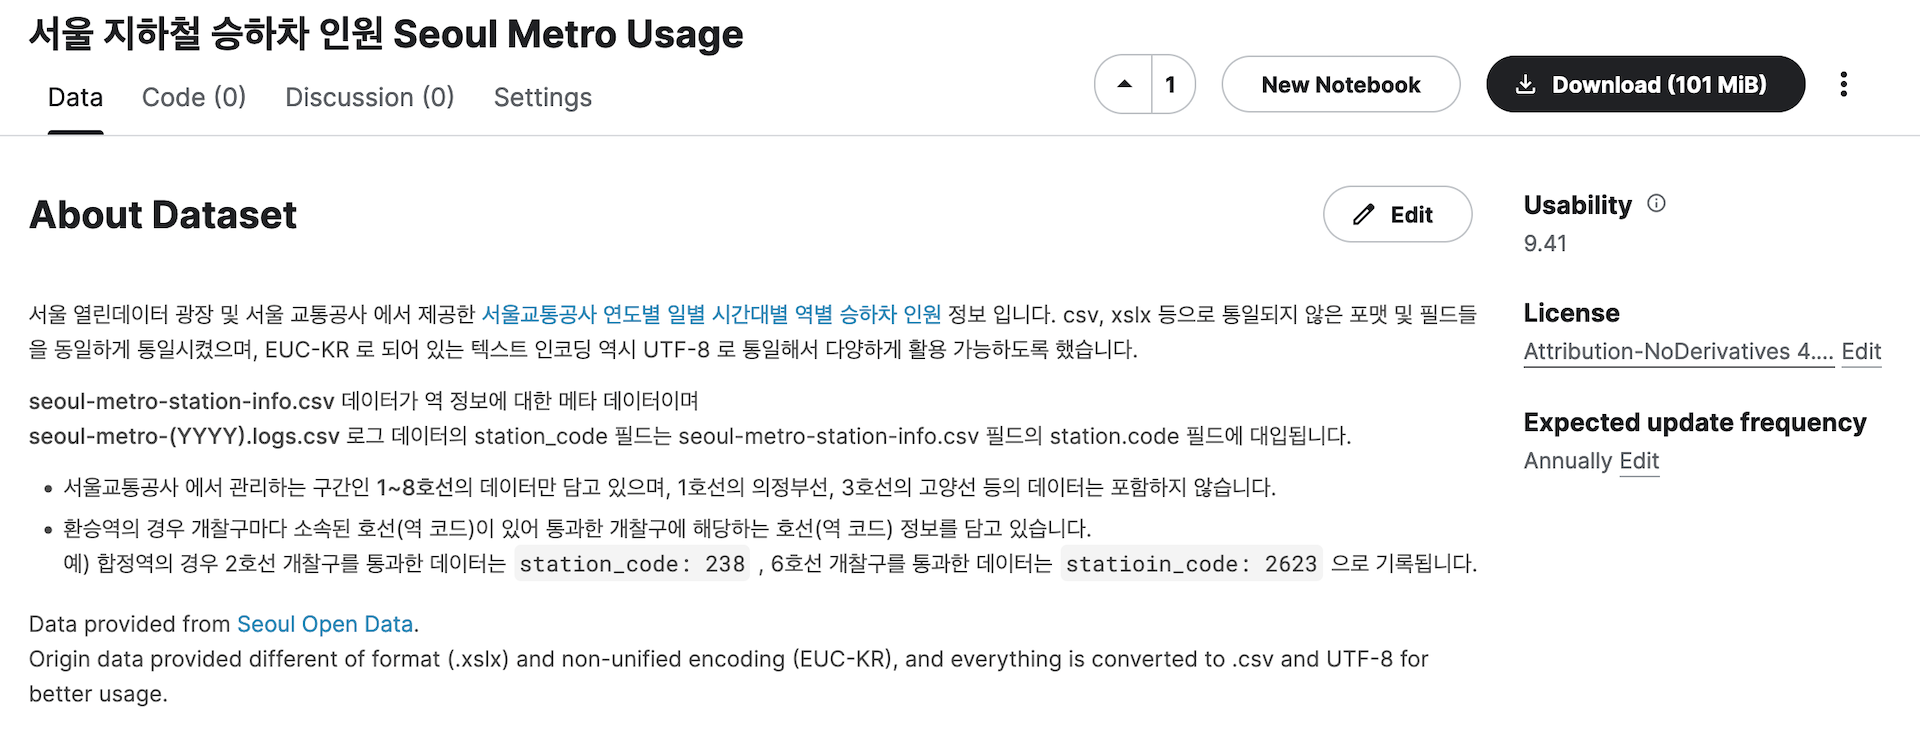 서울 지하철 승하차 인원 Seoul Metro Usage Kaggle Page